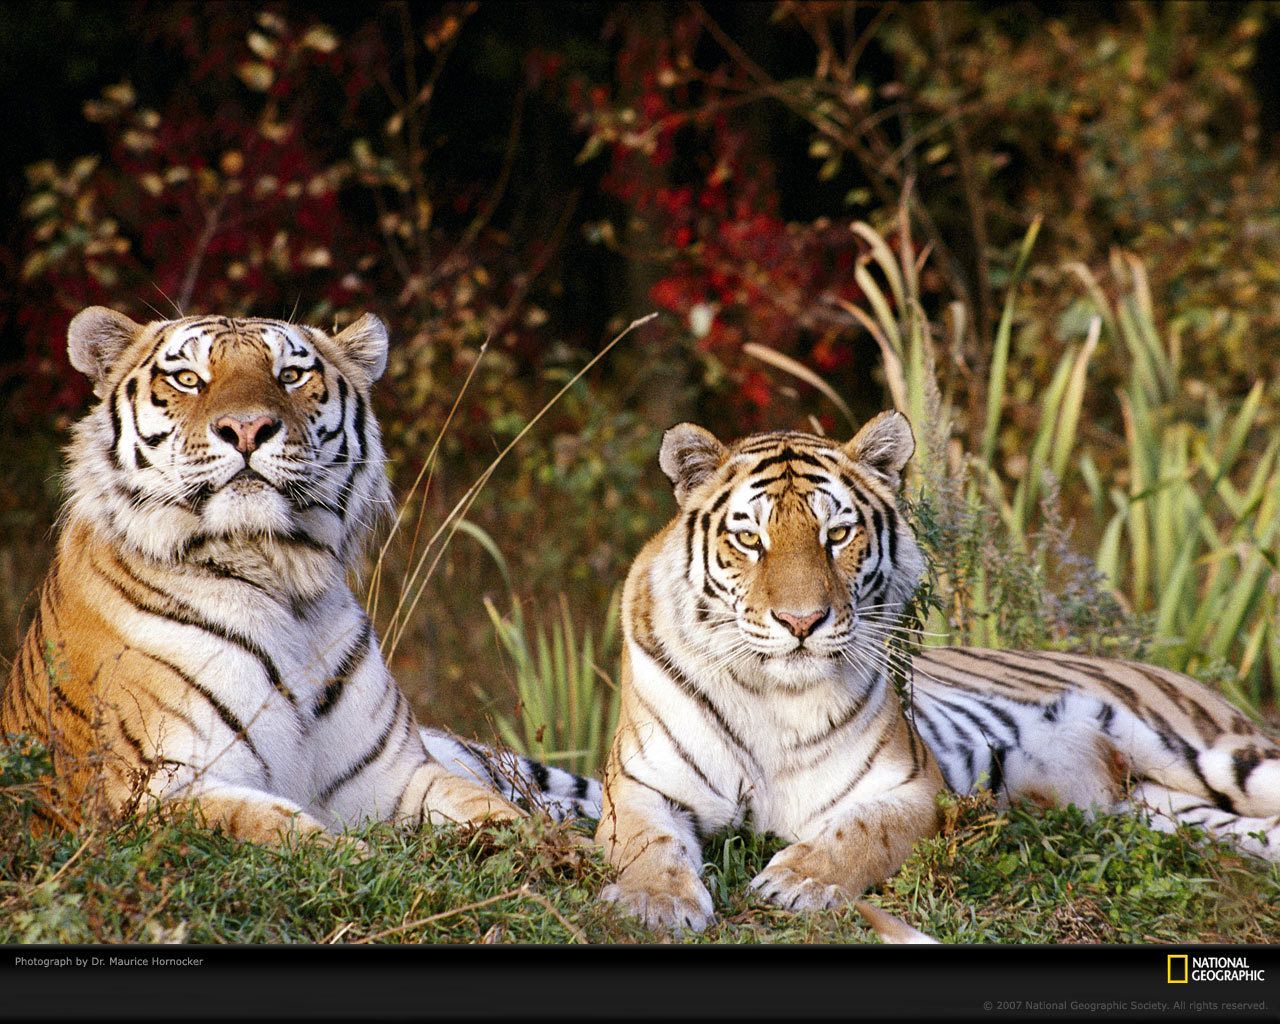 Tiger Wallpaper - Tigers Wallpaper 9981546 - Fanpop